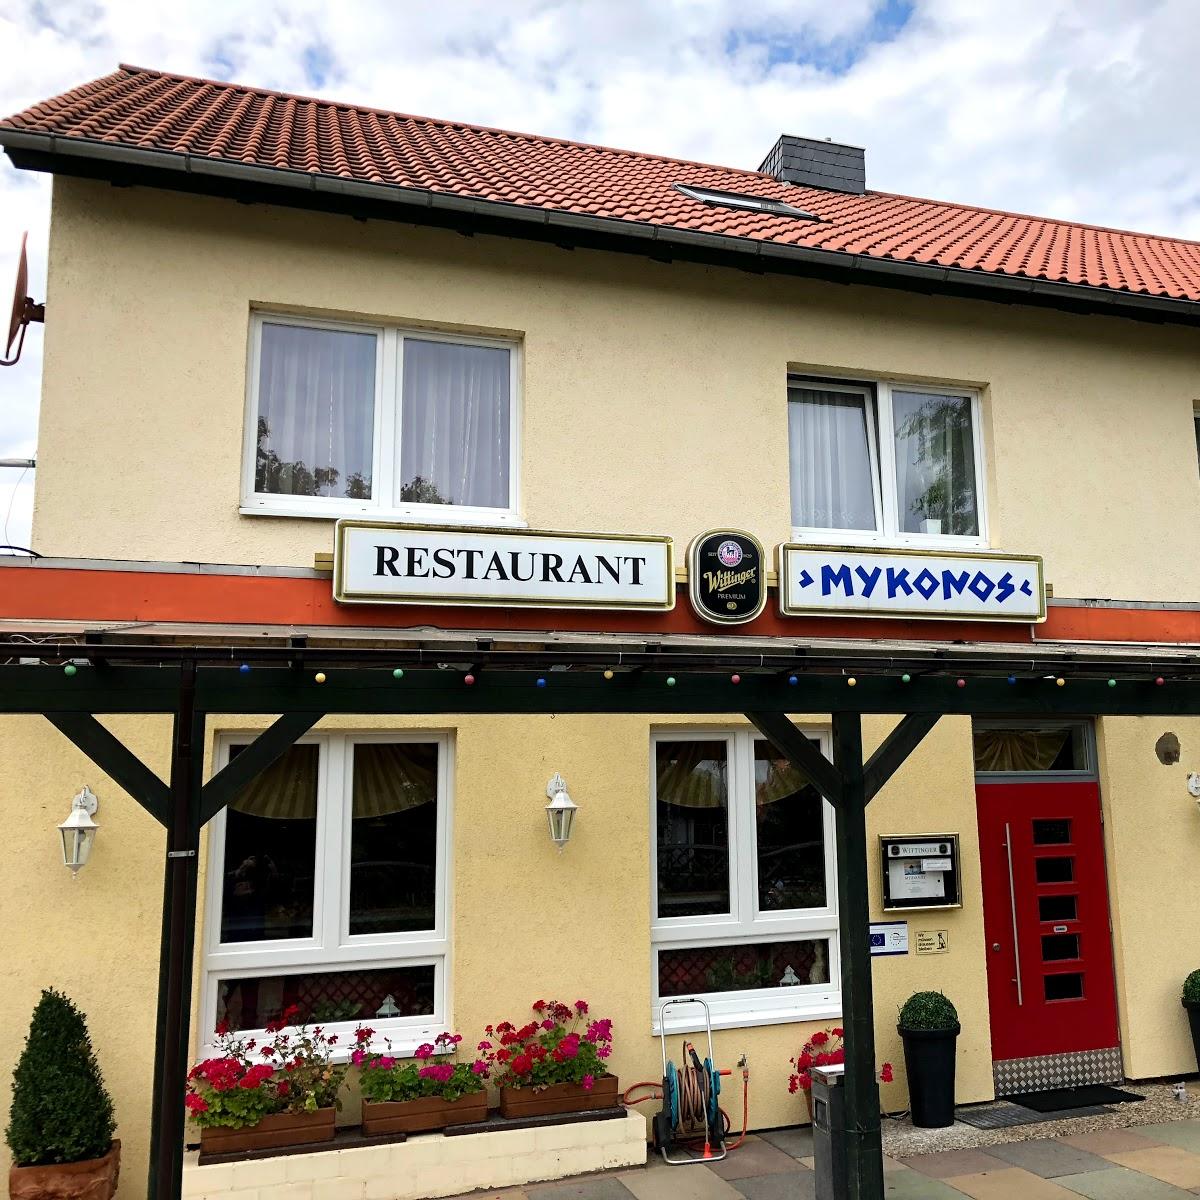 Restaurant "Griechisches Restaurant Mykonos" in  Hankensbüttel